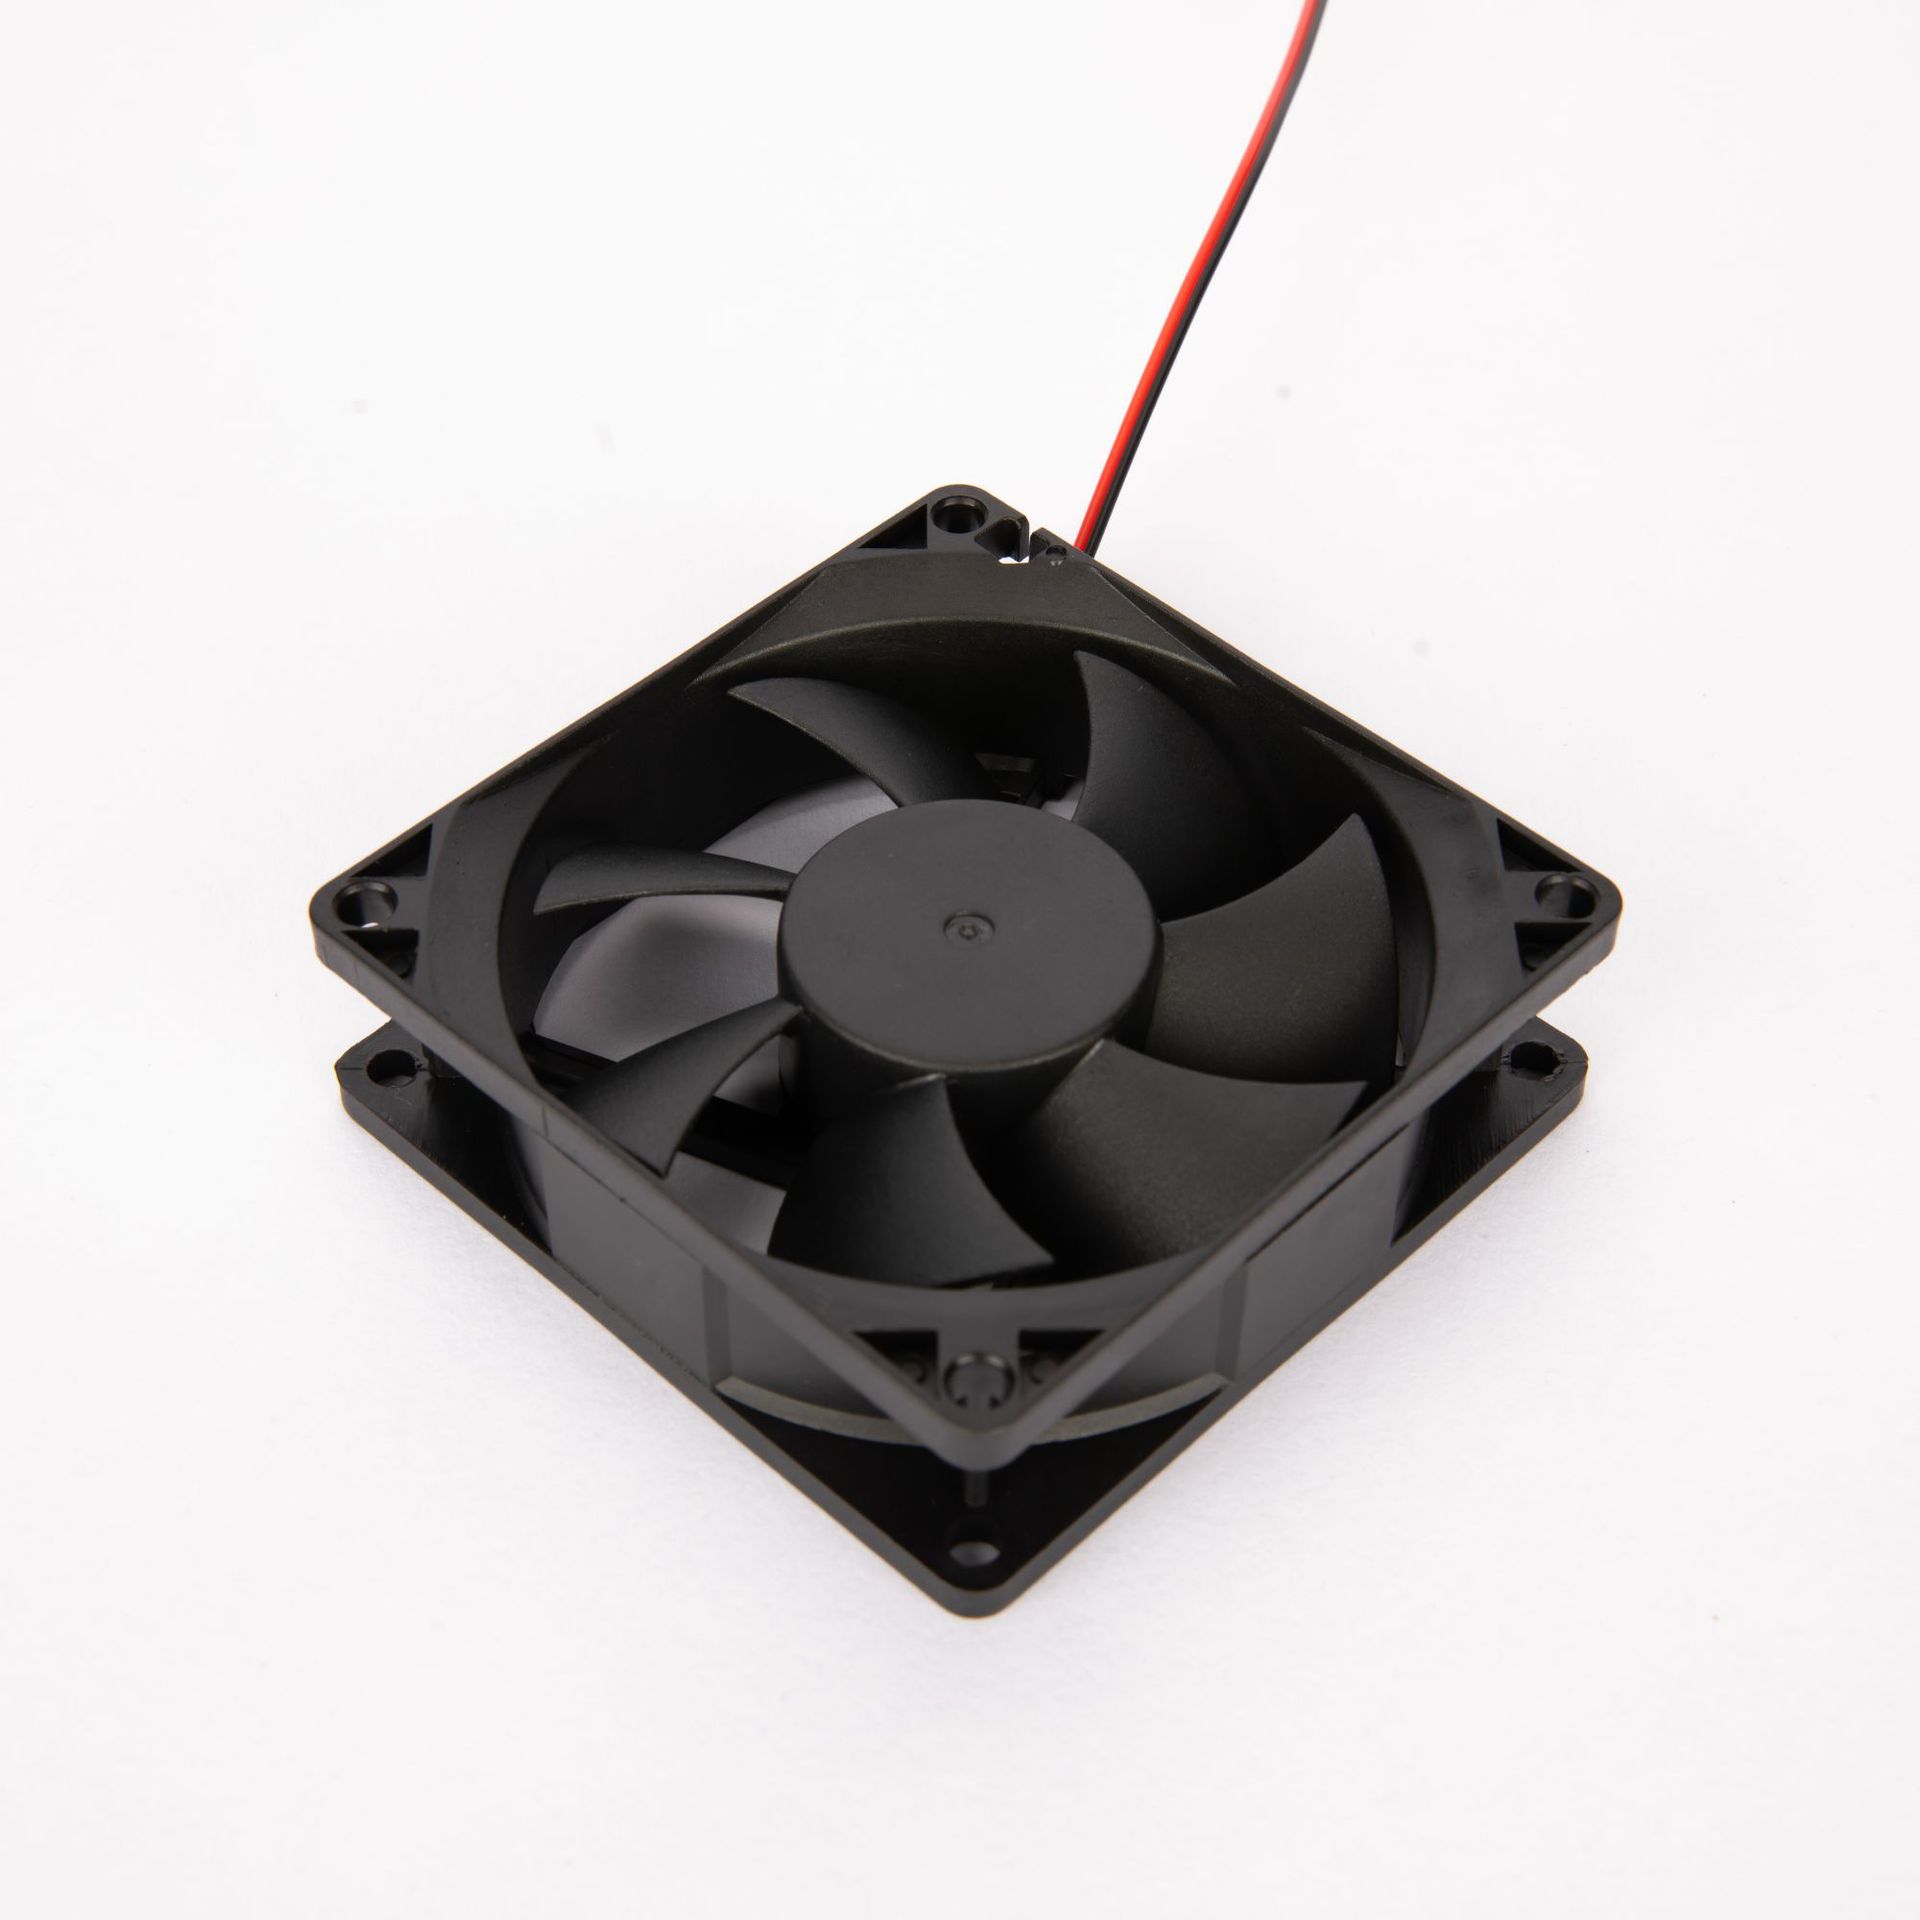 8025 Black Fan Mute Max Airflow Rate 8cm Power Radiator CPU Fan